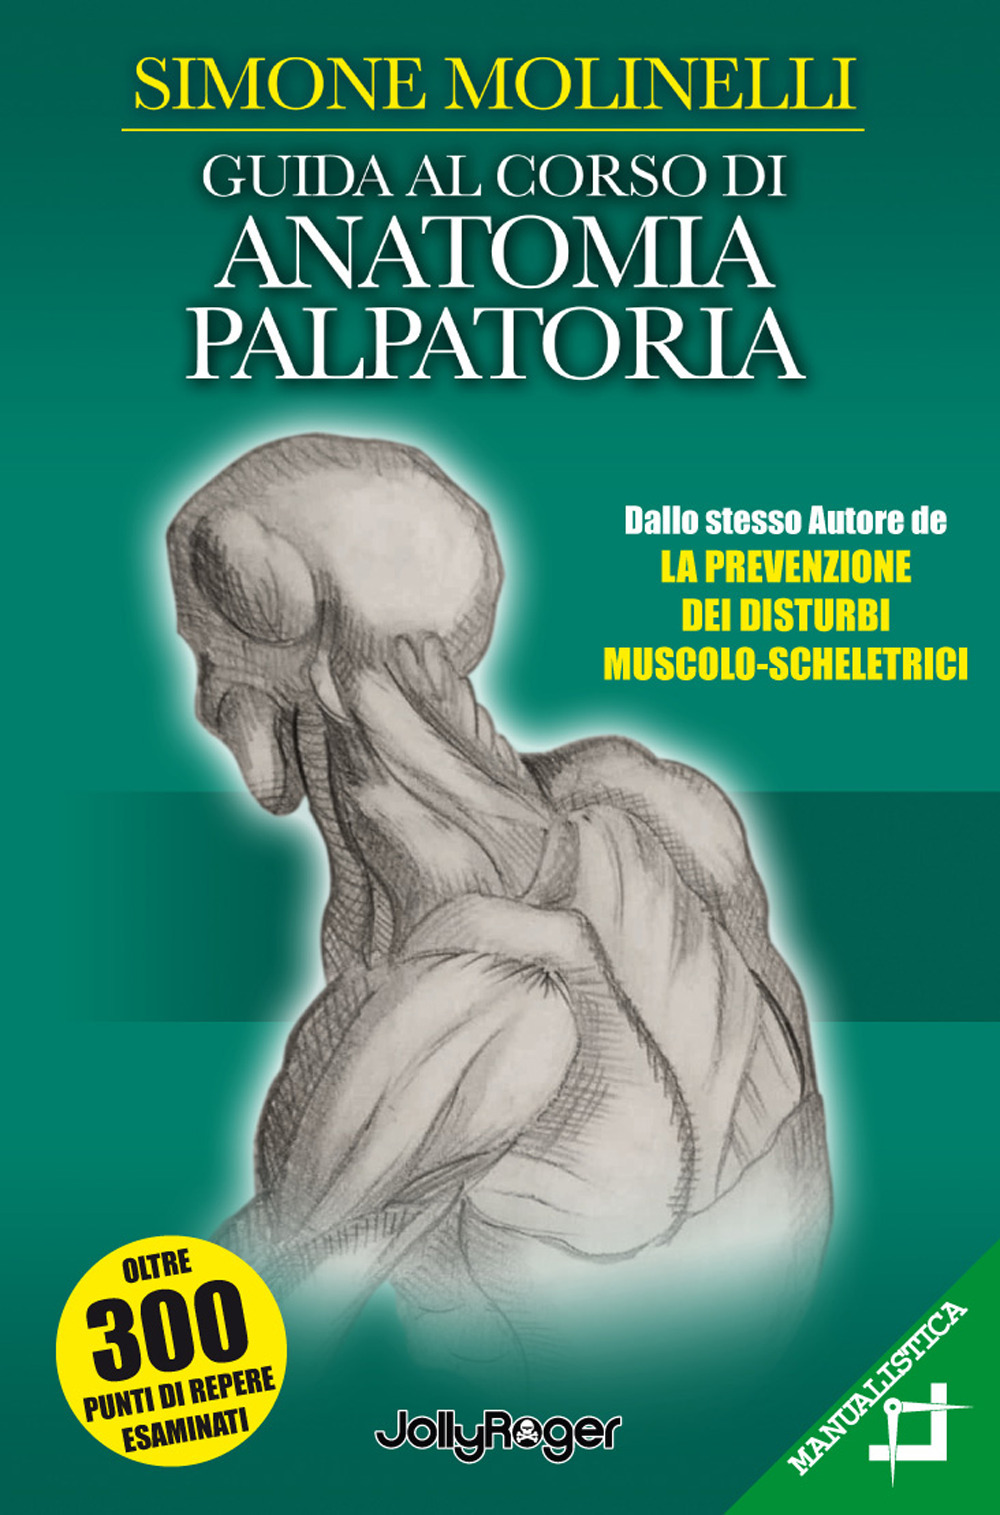 Libri Simone Molinelli - Guida Al Corso Di Anatomia Palpatoria NUOVO SIGILLATO, EDIZIONE DEL 18/02/2020 SUBITO DISPONIBILE